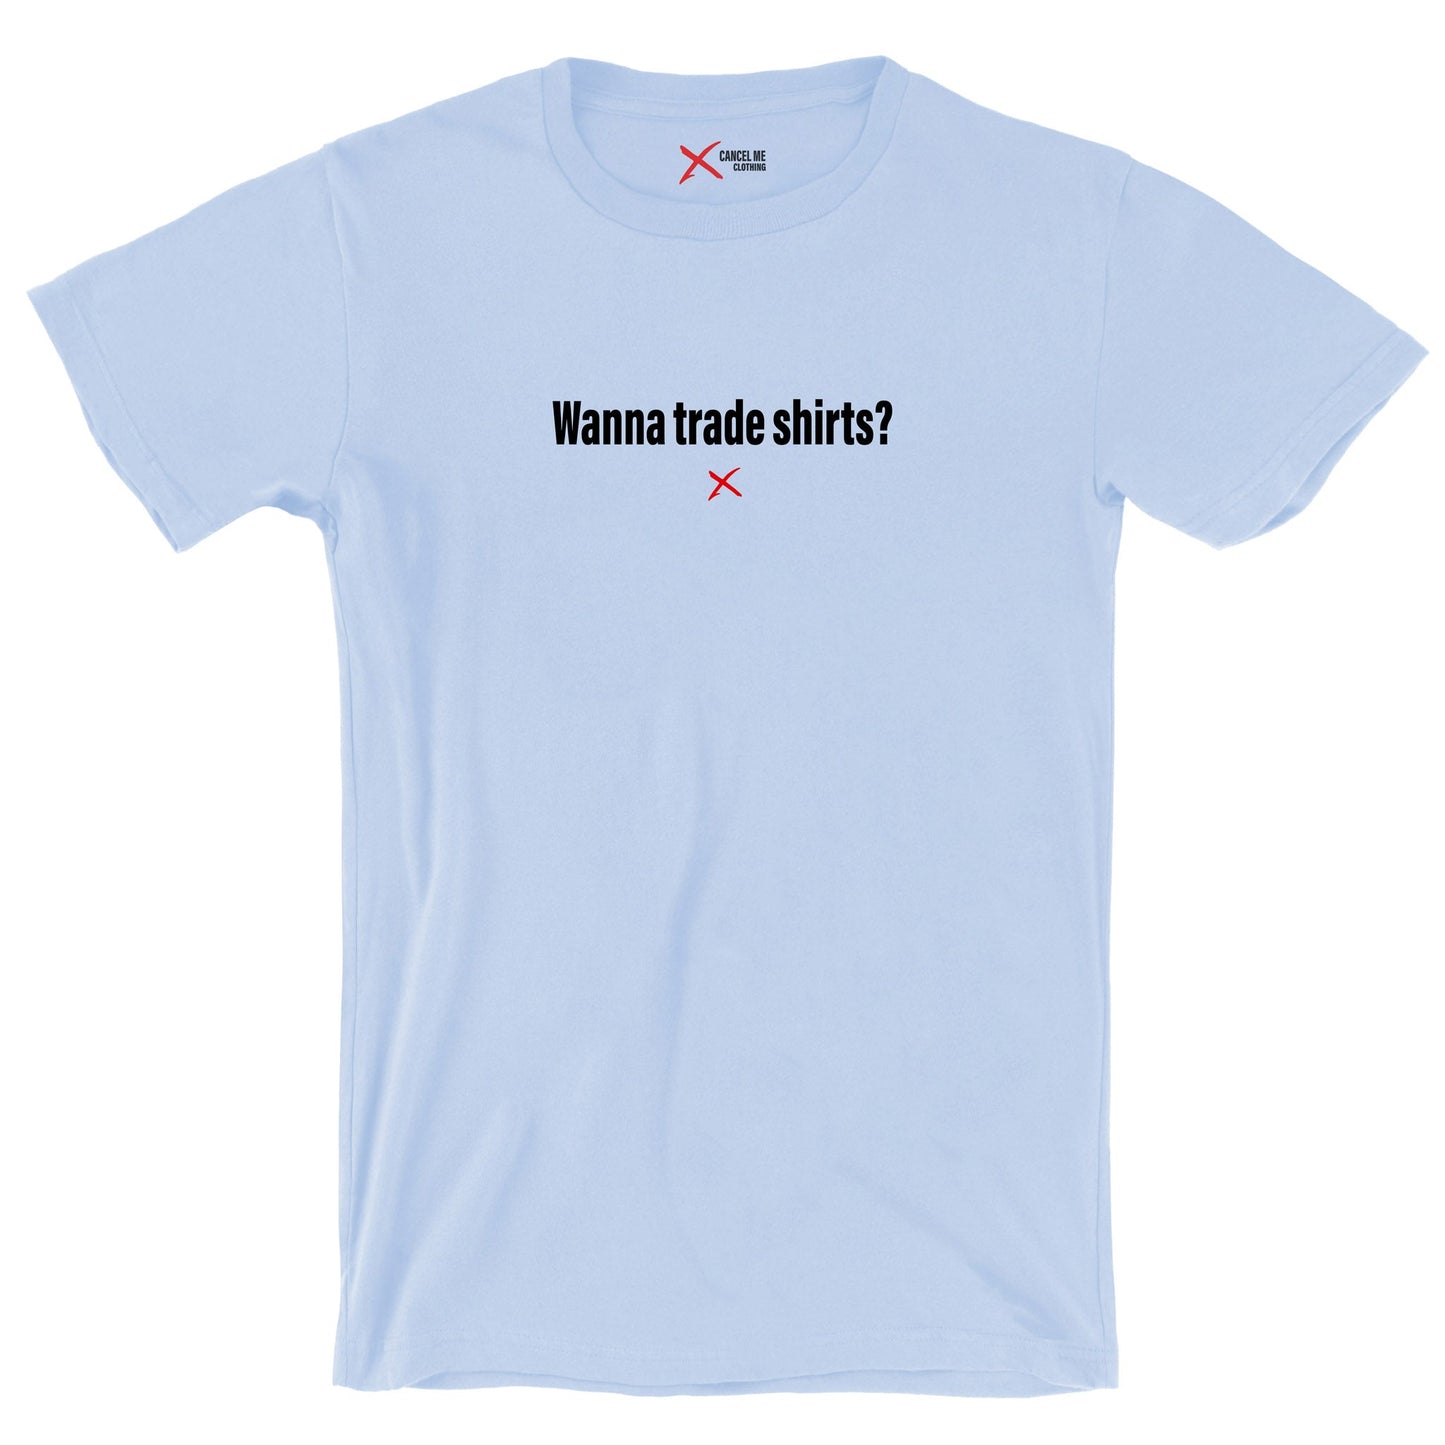 Wanna trade shirts? - Shirt